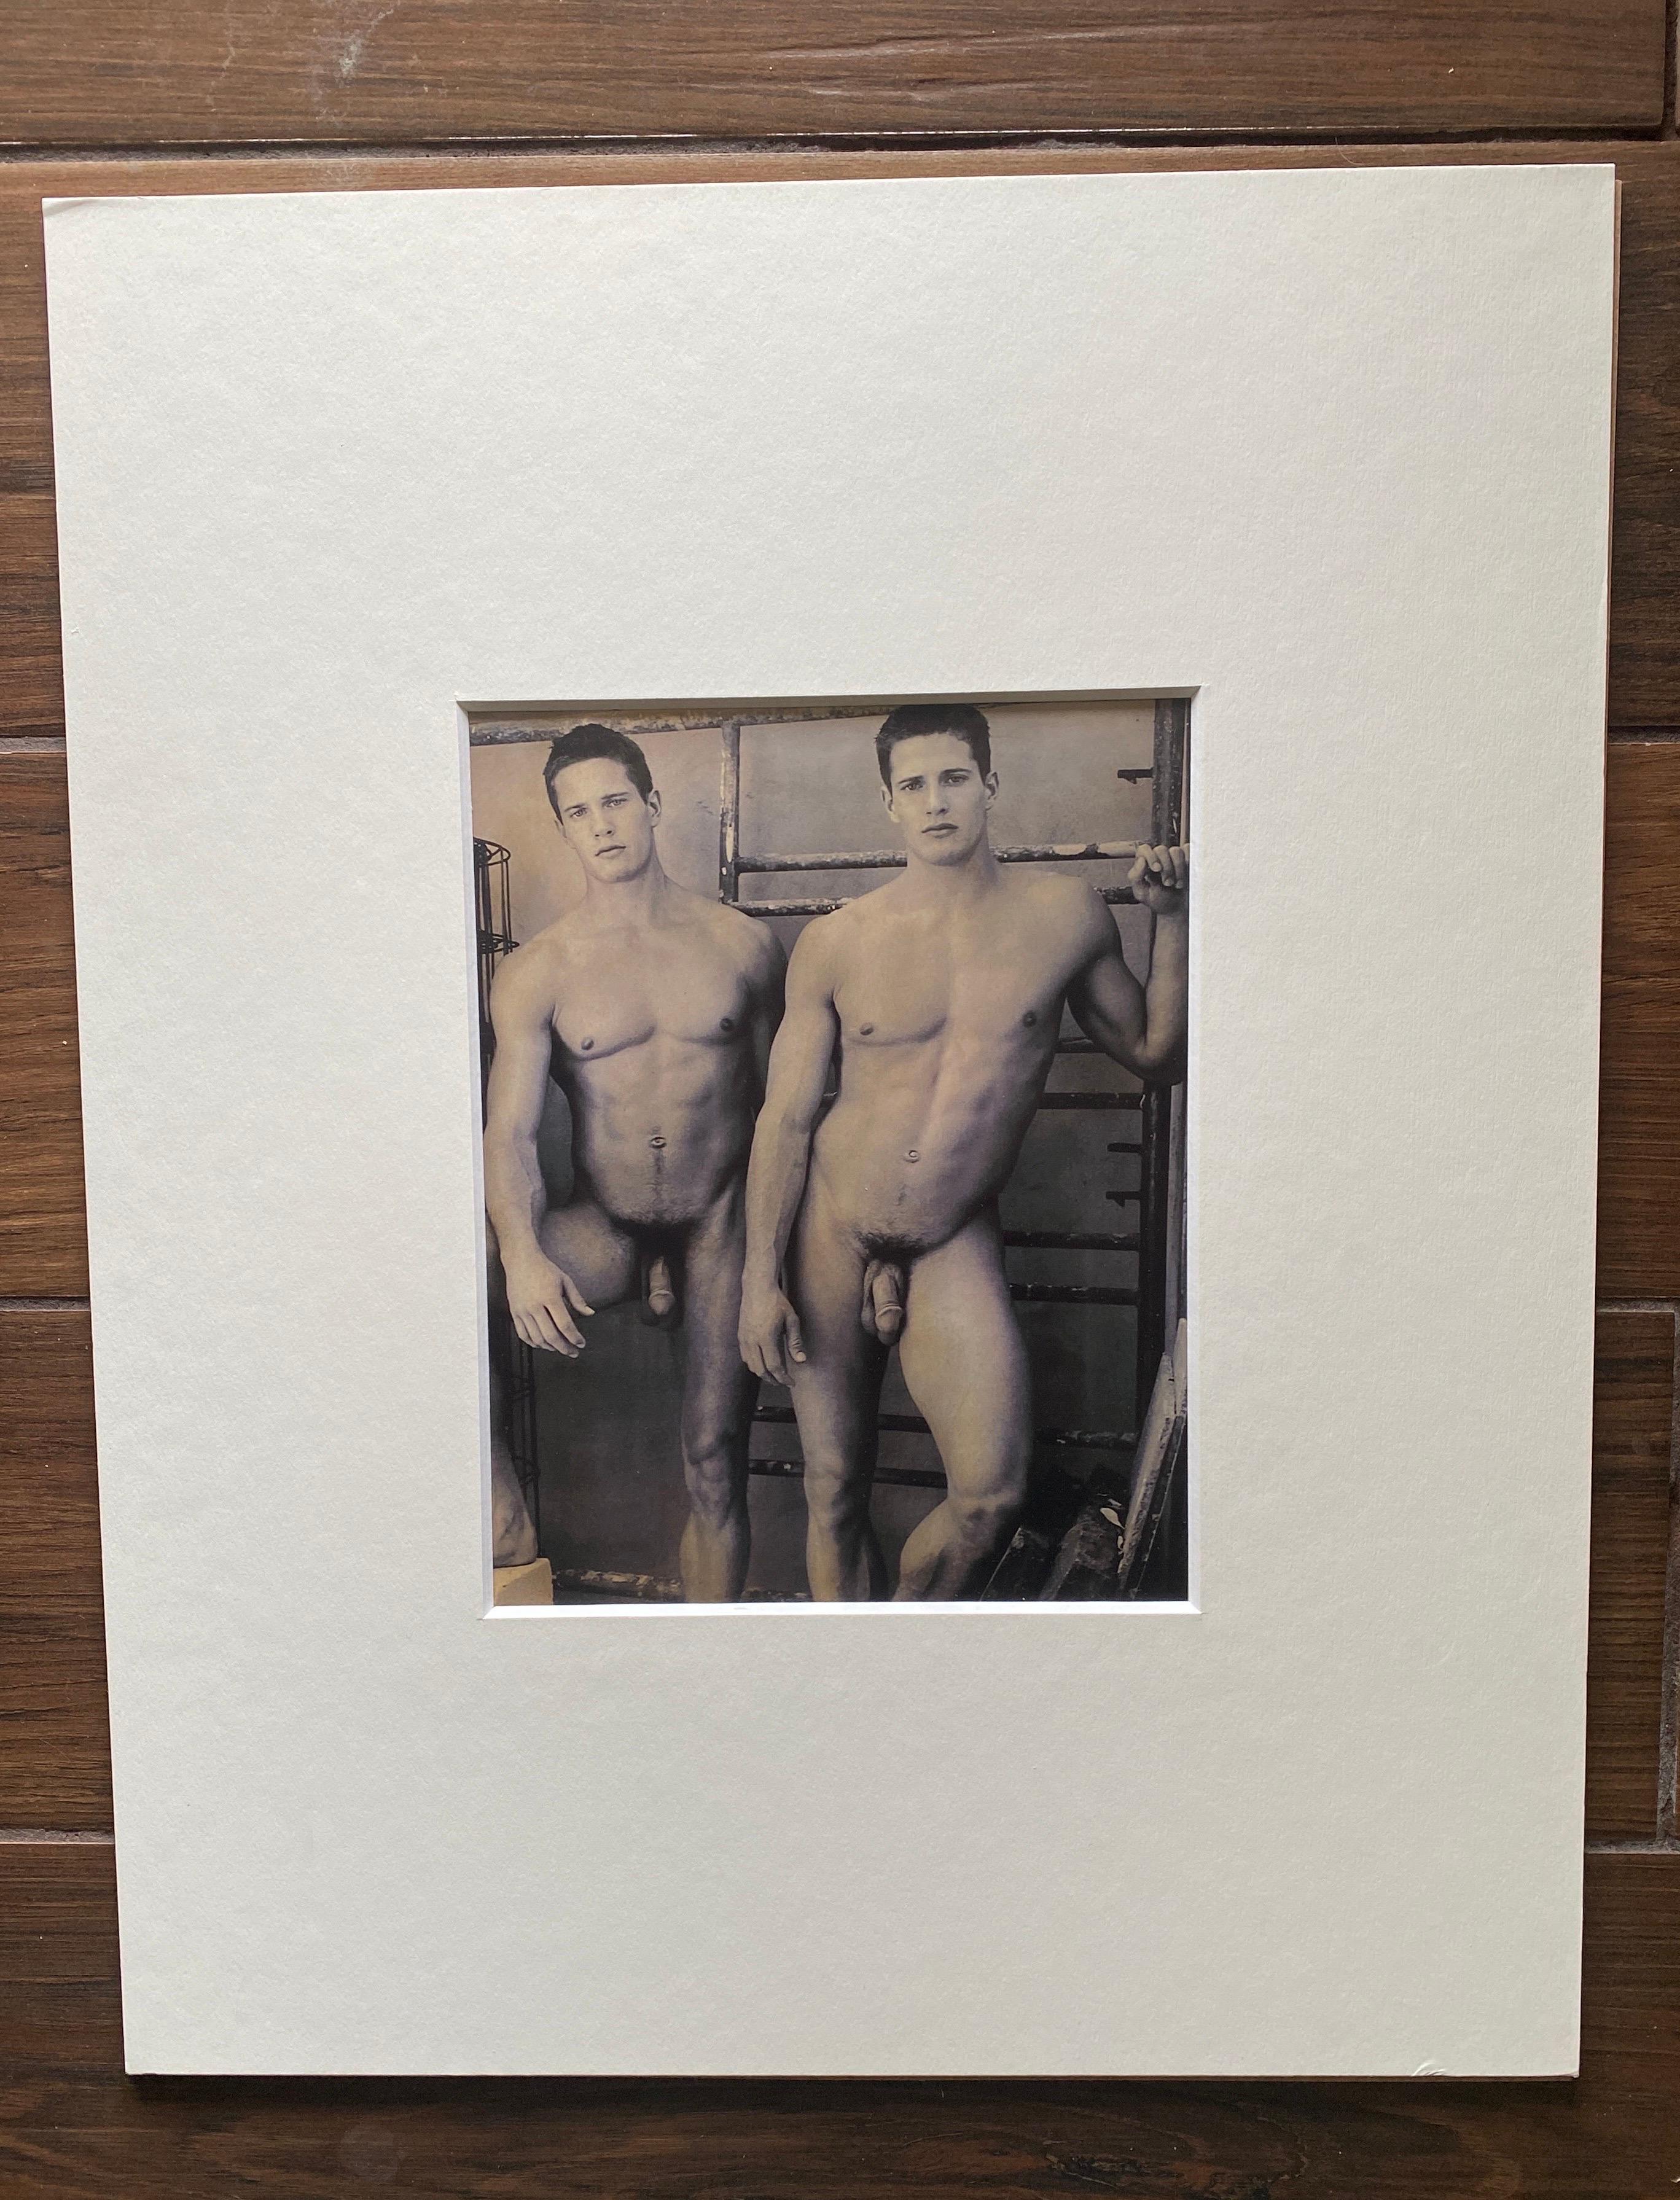 Nous vendons 4 images des jumeaux Carlson, Lane et Kyle. Ce que l'on sait : la série de nus a été réalisée par Bruce Weber en 2000. Elles sont intitulées 